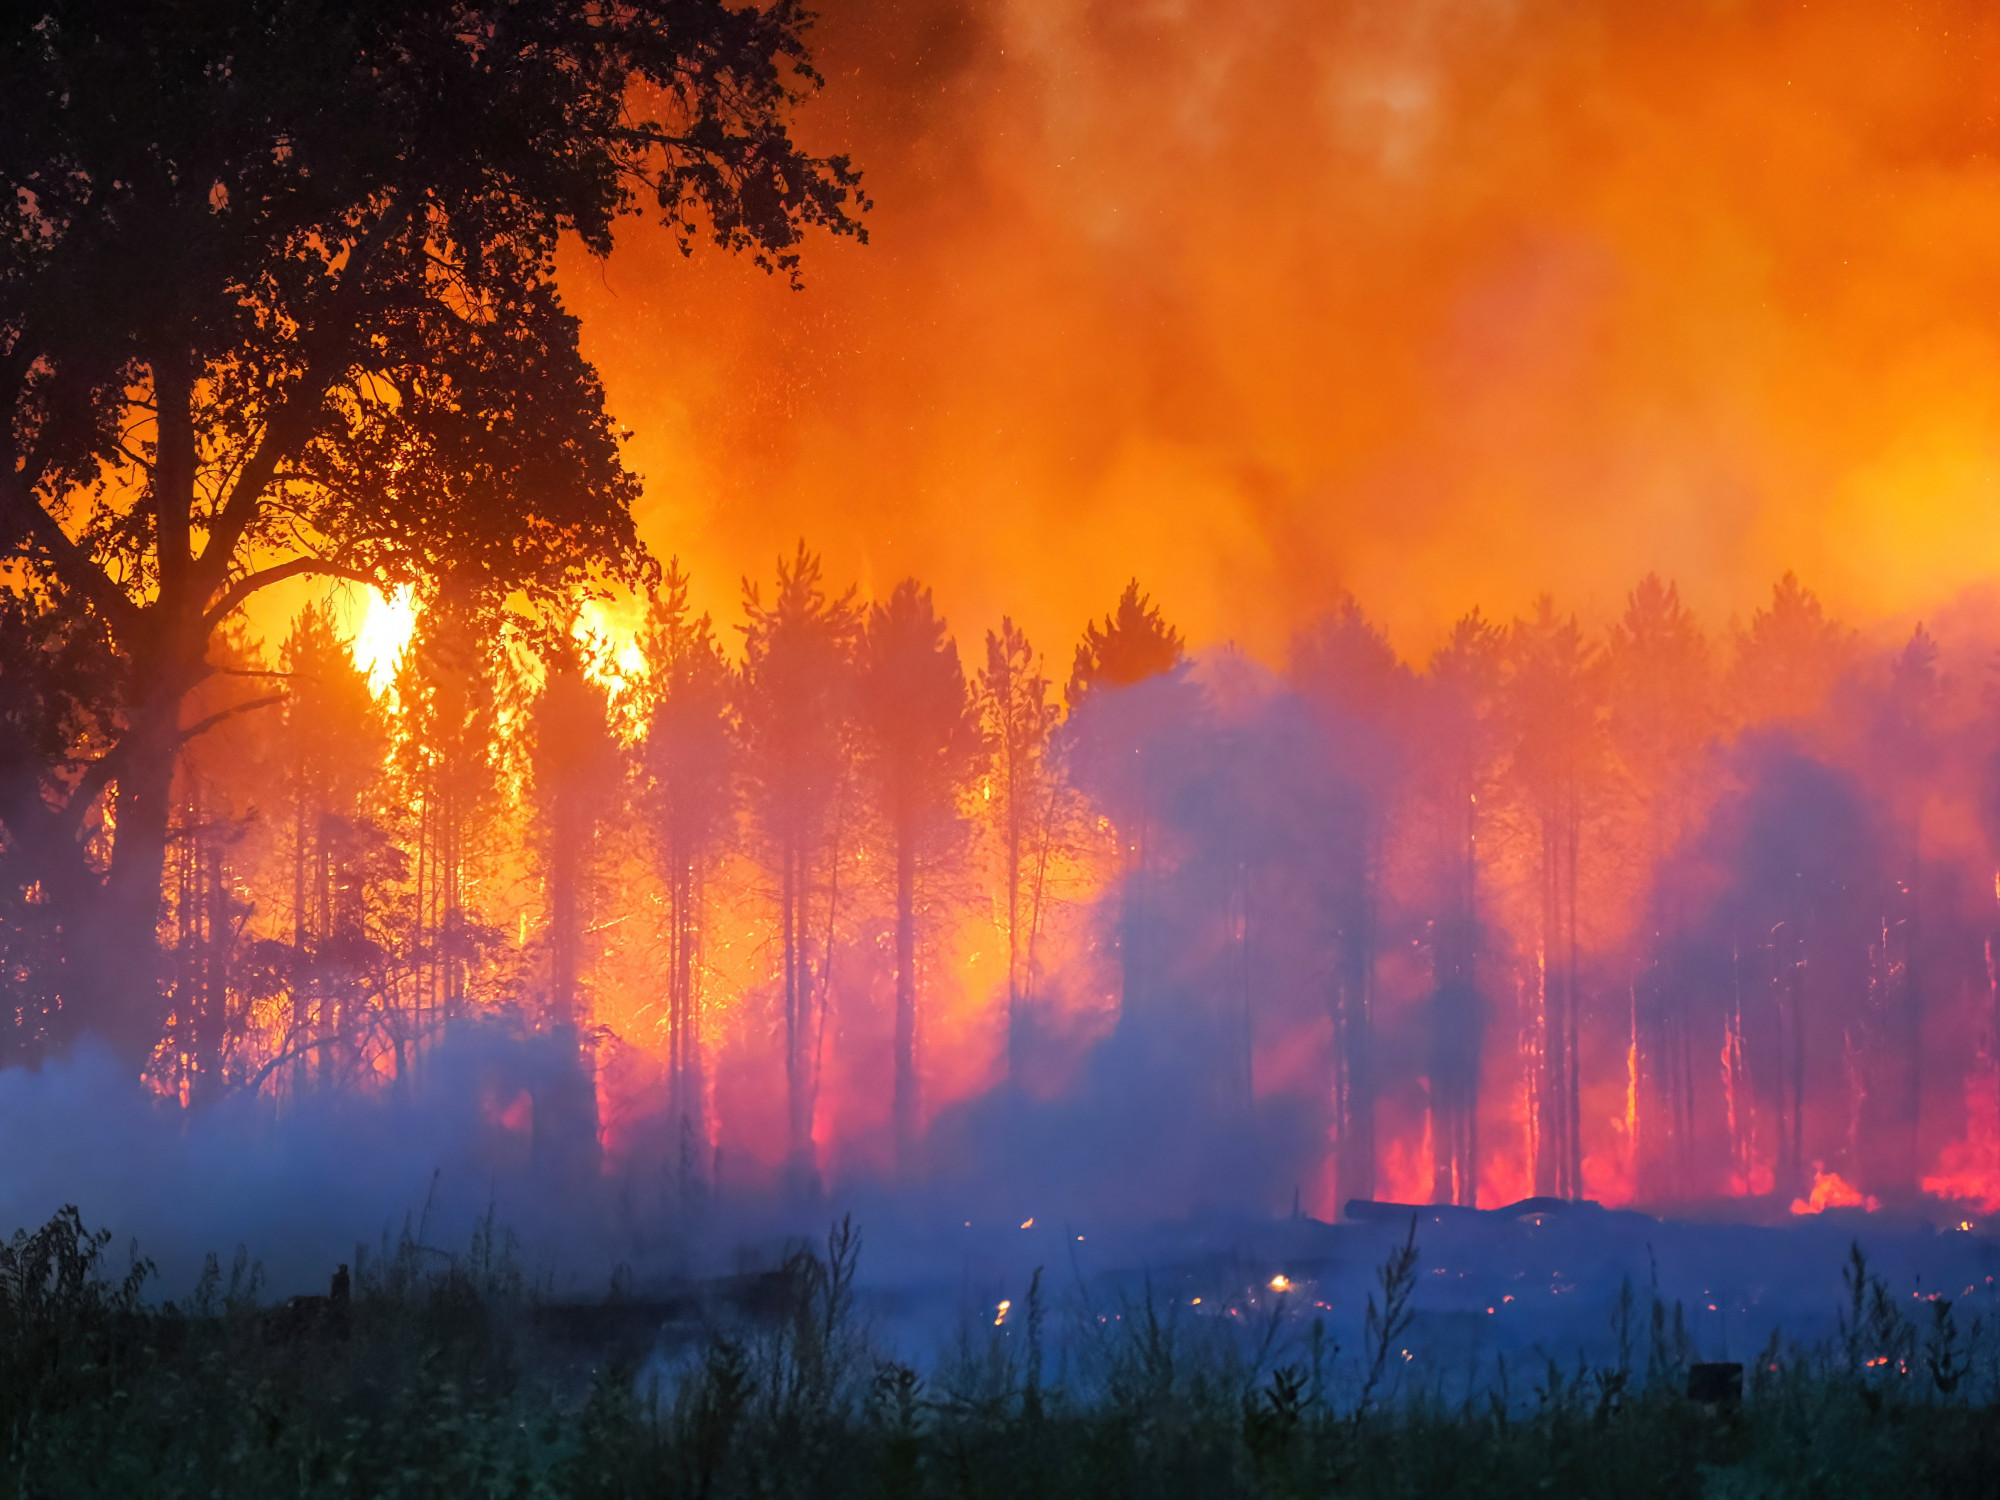 Dermesztő képek készültek az ötven hektáron lángoló erdőről Izsák közelében